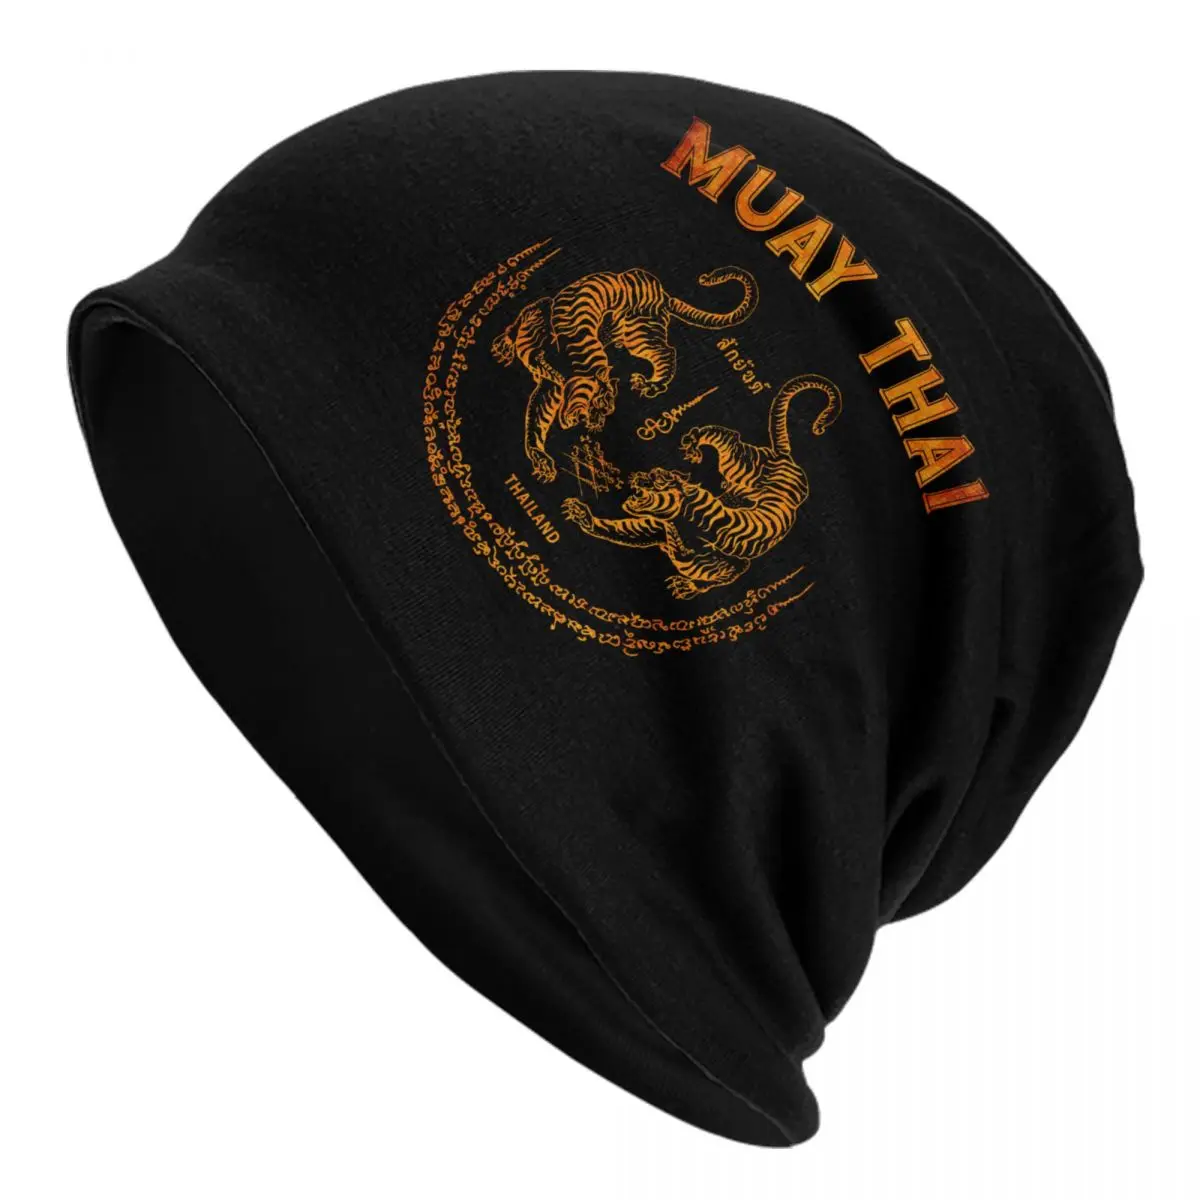 

Шапочки Muay Thai с тигром, облегающие шапки, крутые зимние теплые вязаные шапки, унисекс, взрослые, с татуировкой, тайские шапки для кикбоксинга